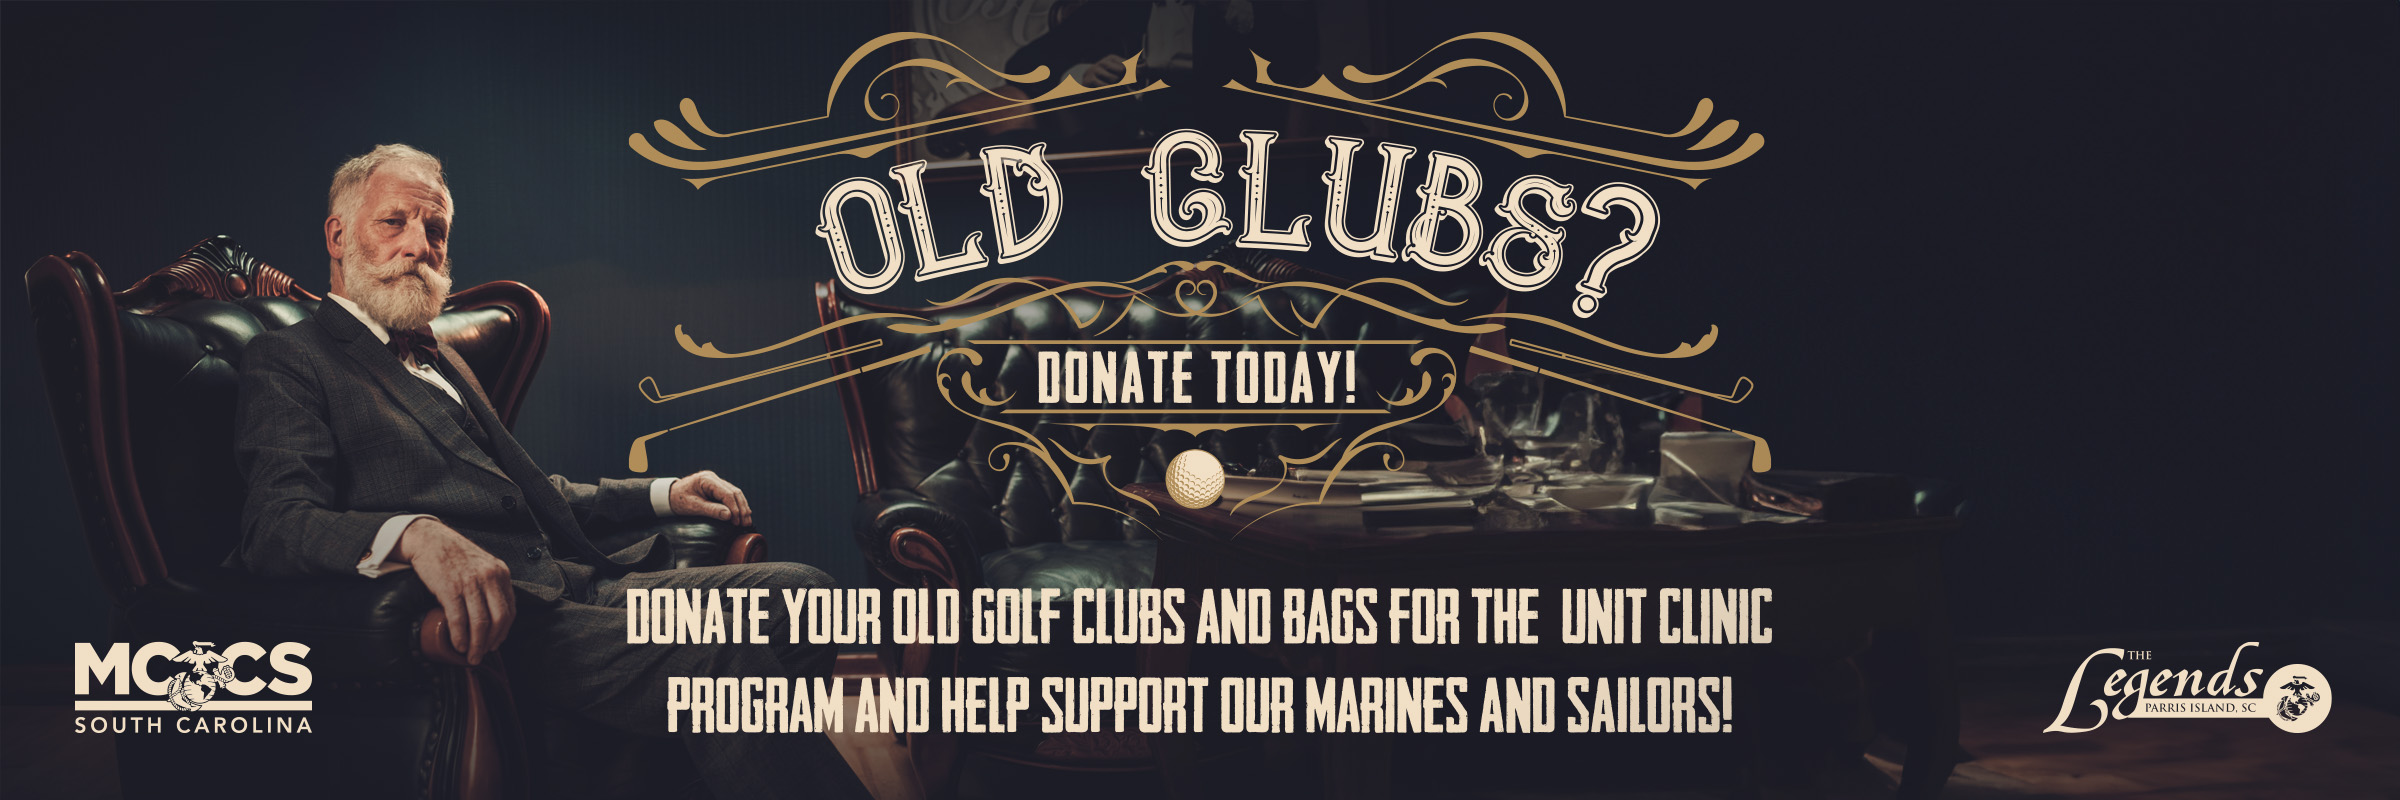 4-15 Golf Club Donations_WEB.jpg